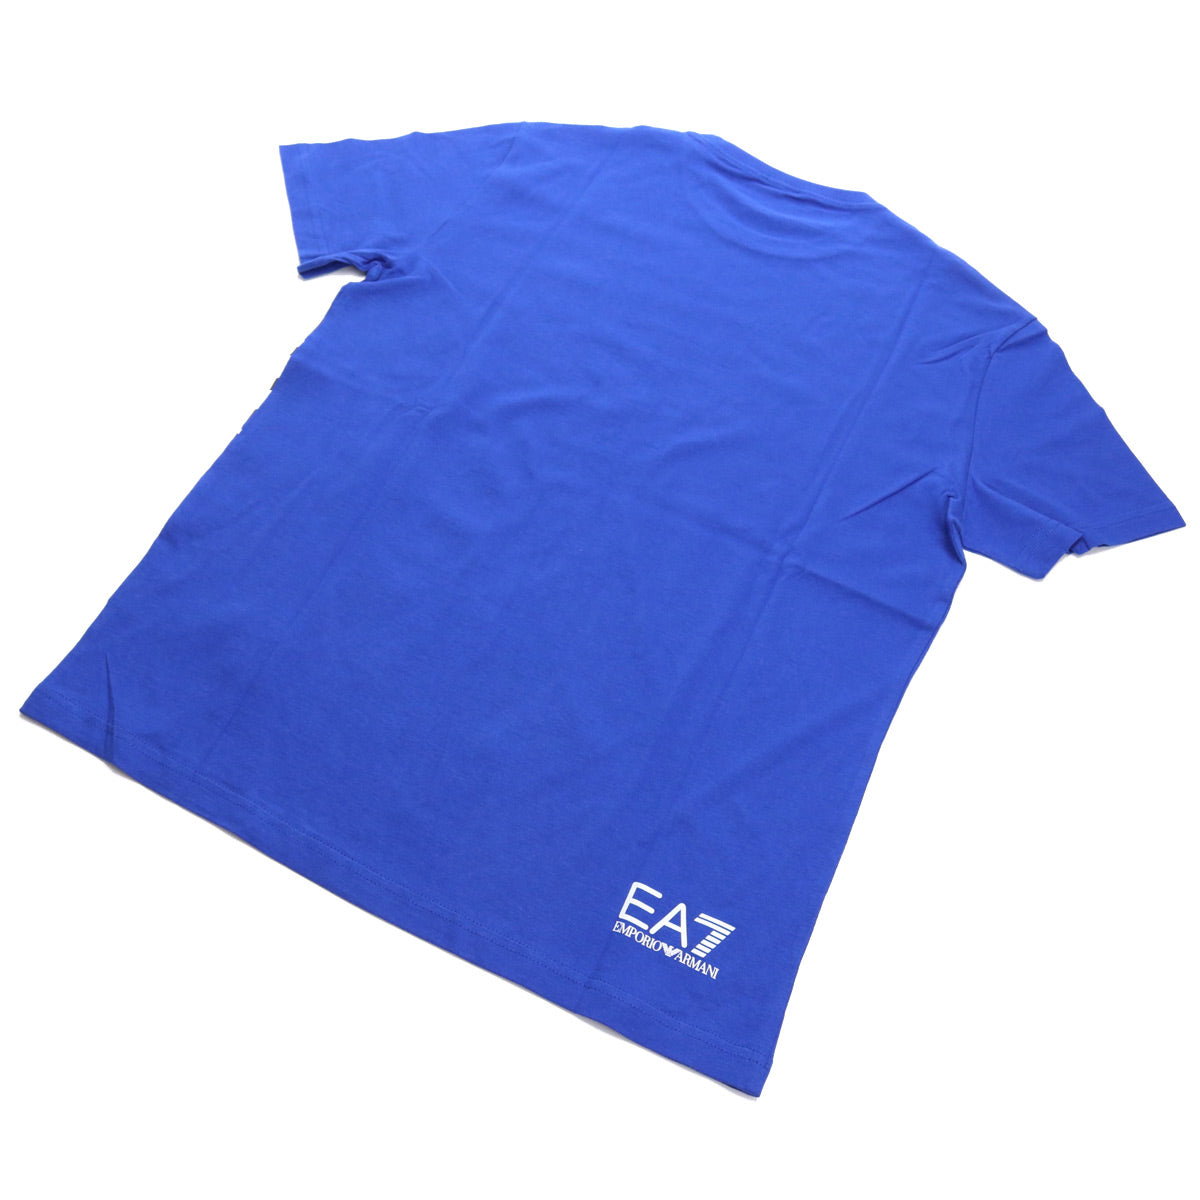 6HPT07 Tシャツ SURF THE WEB ブルー系 メンズ